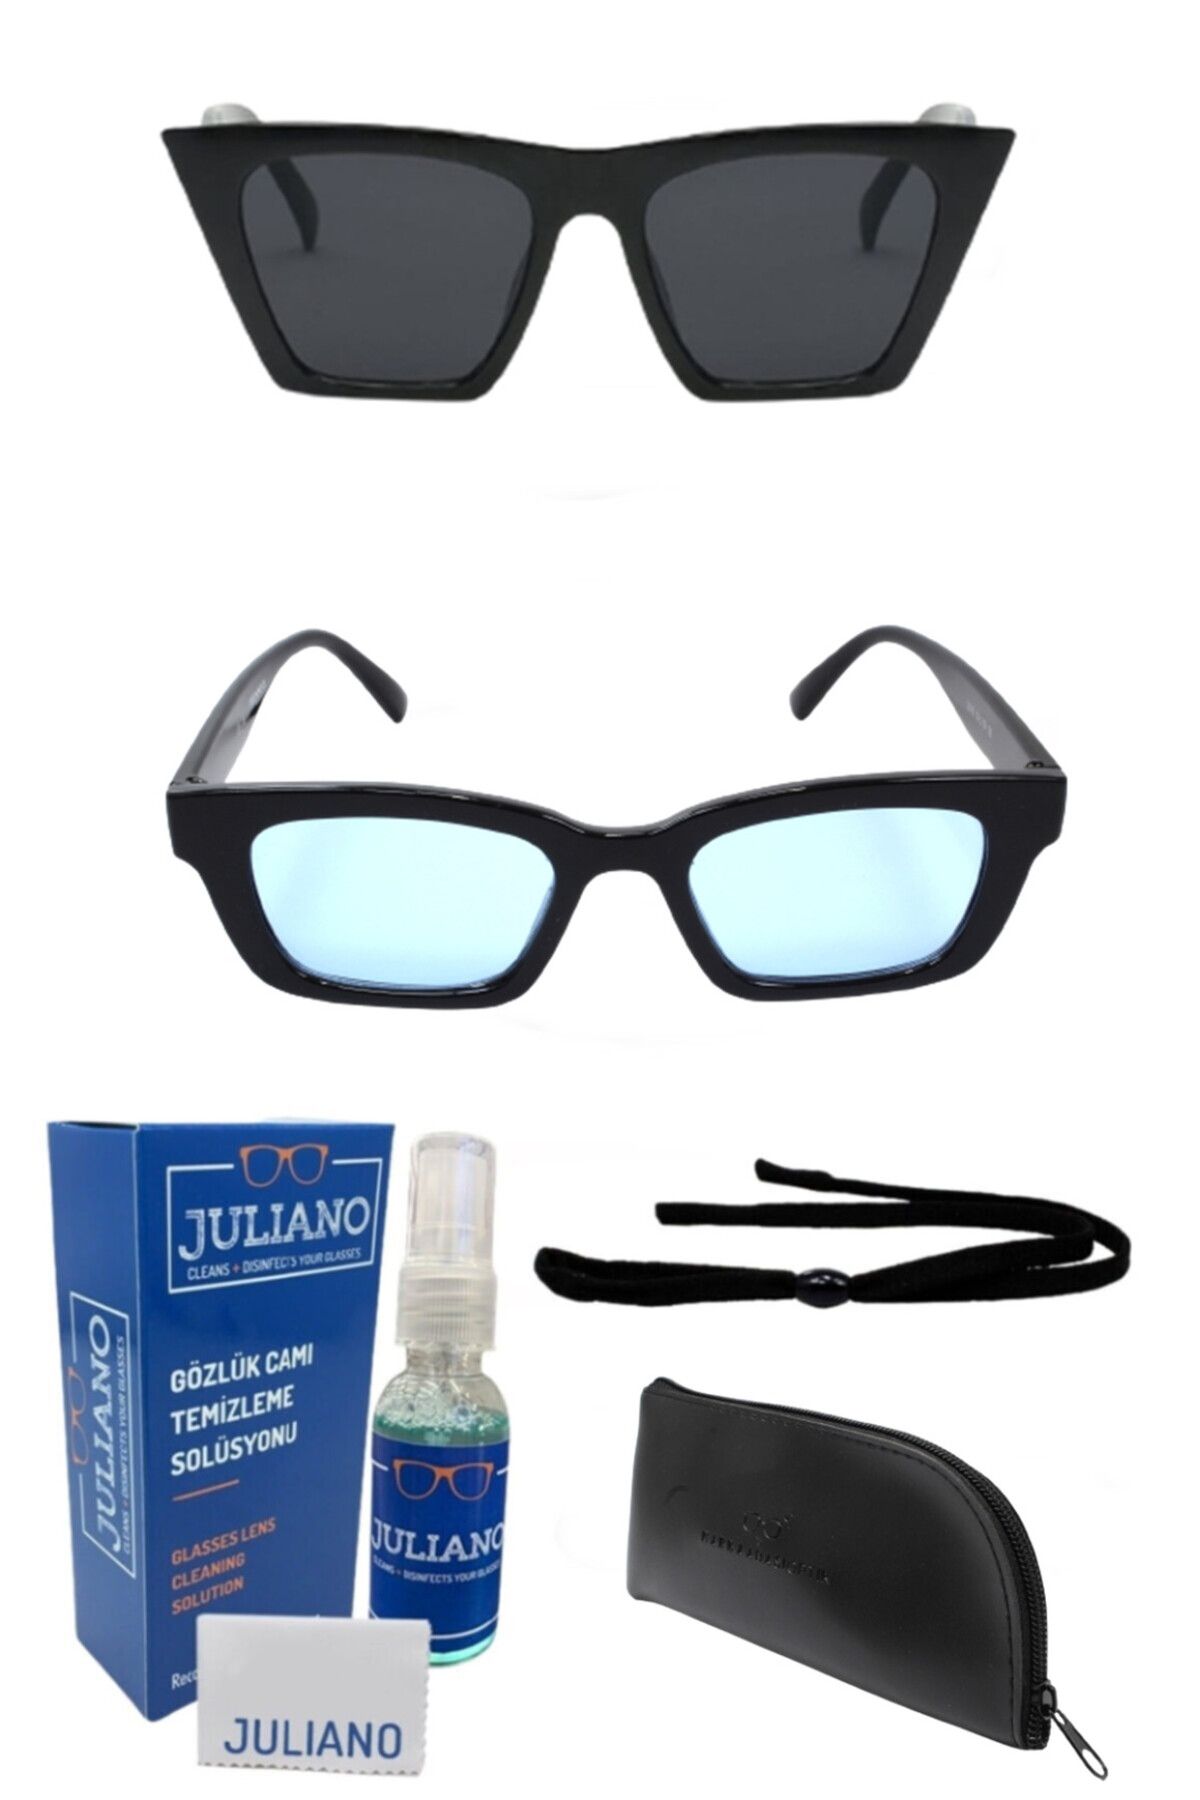 JULIANO 2li Tasarım Kadın Güneş Gözlüğü Seti - Sprey Ve Sporcu Ip Hediyeli